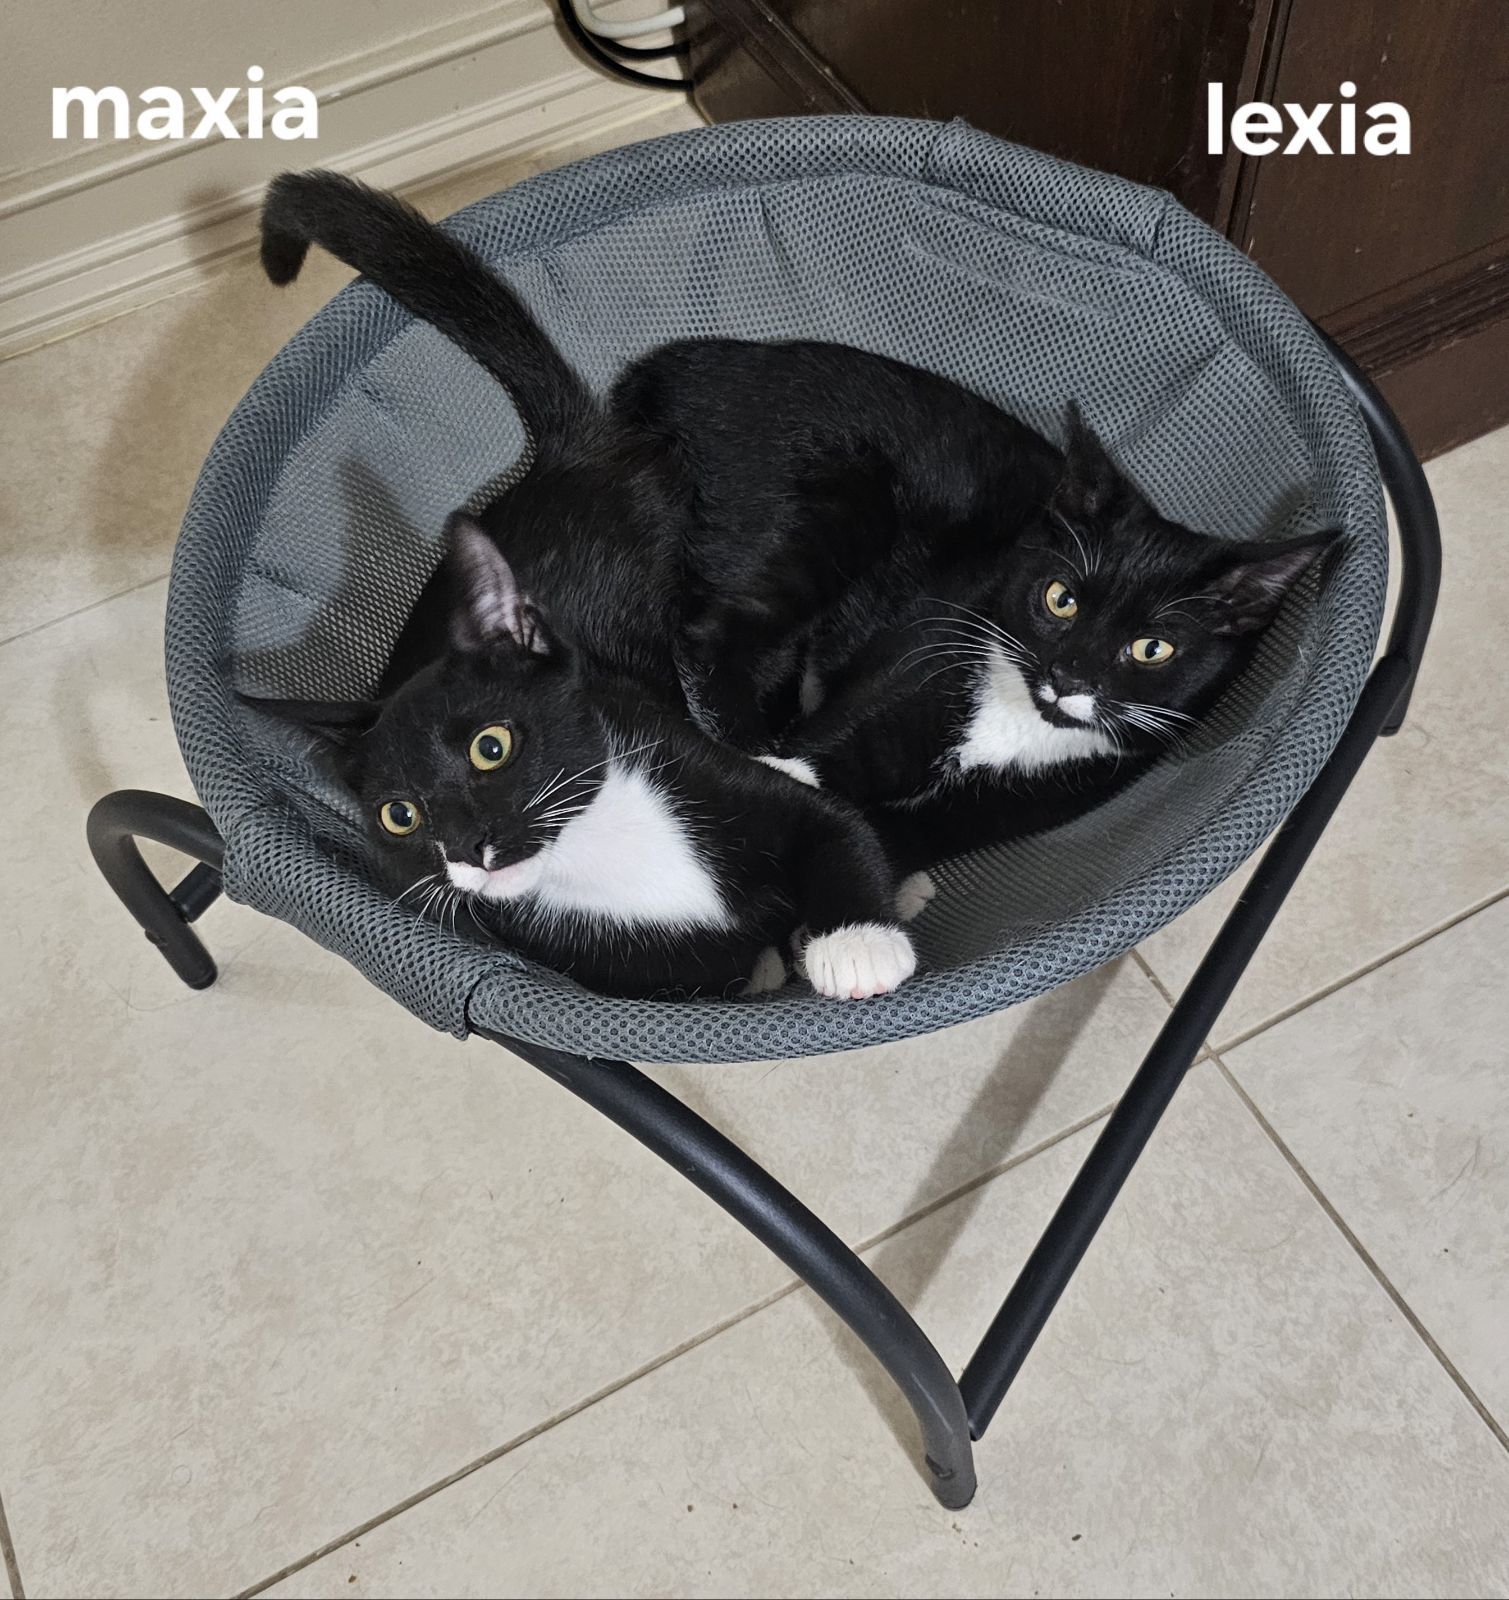 Maxia & Lexia